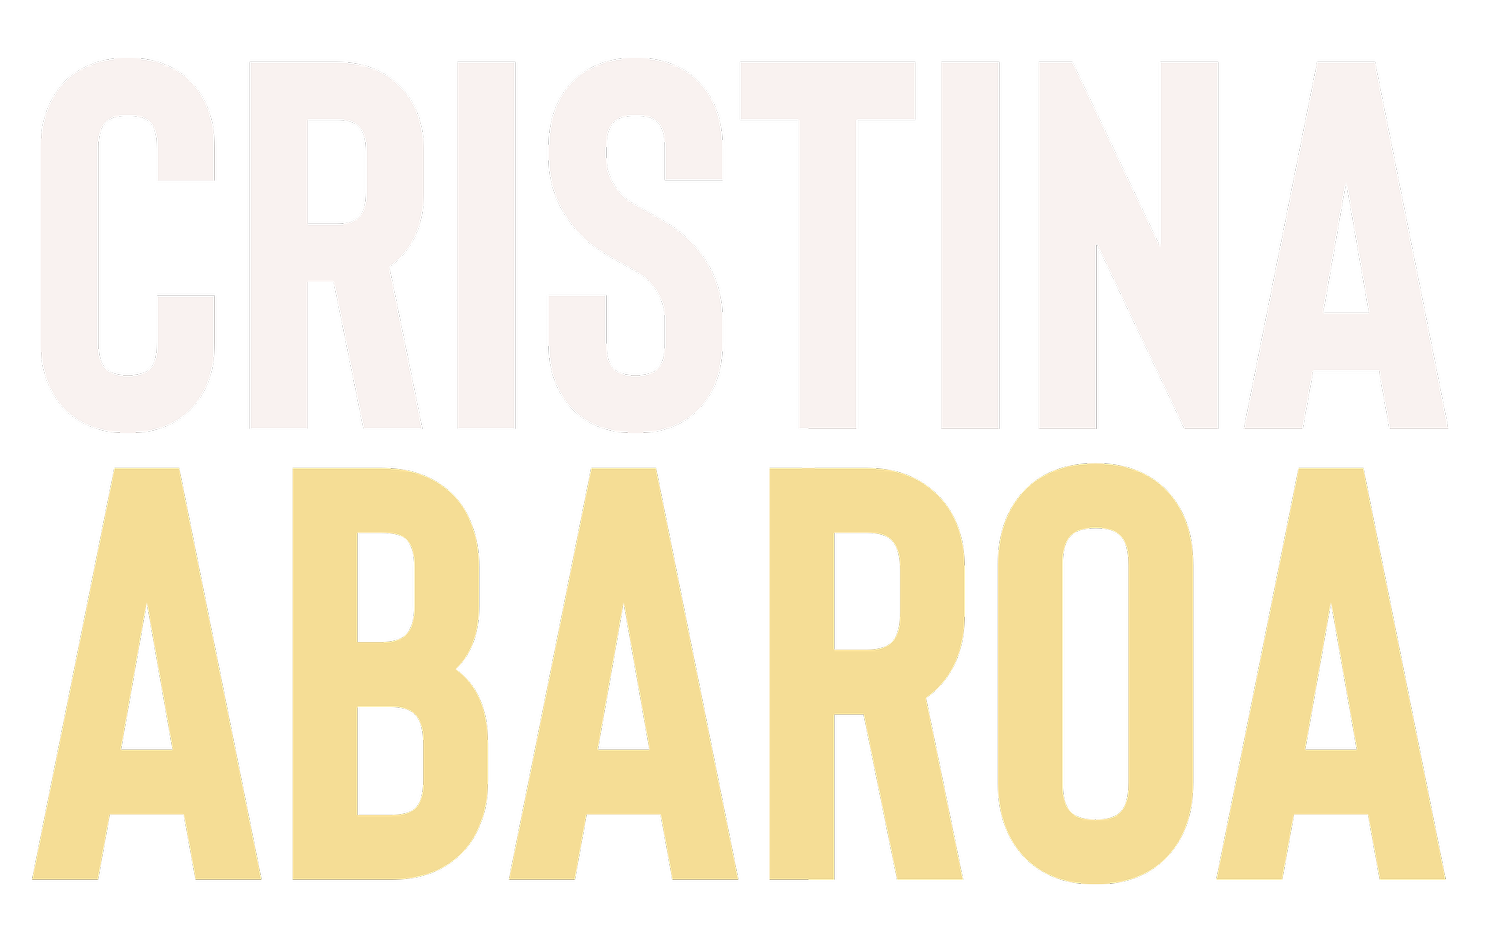 Cristina Abaroa